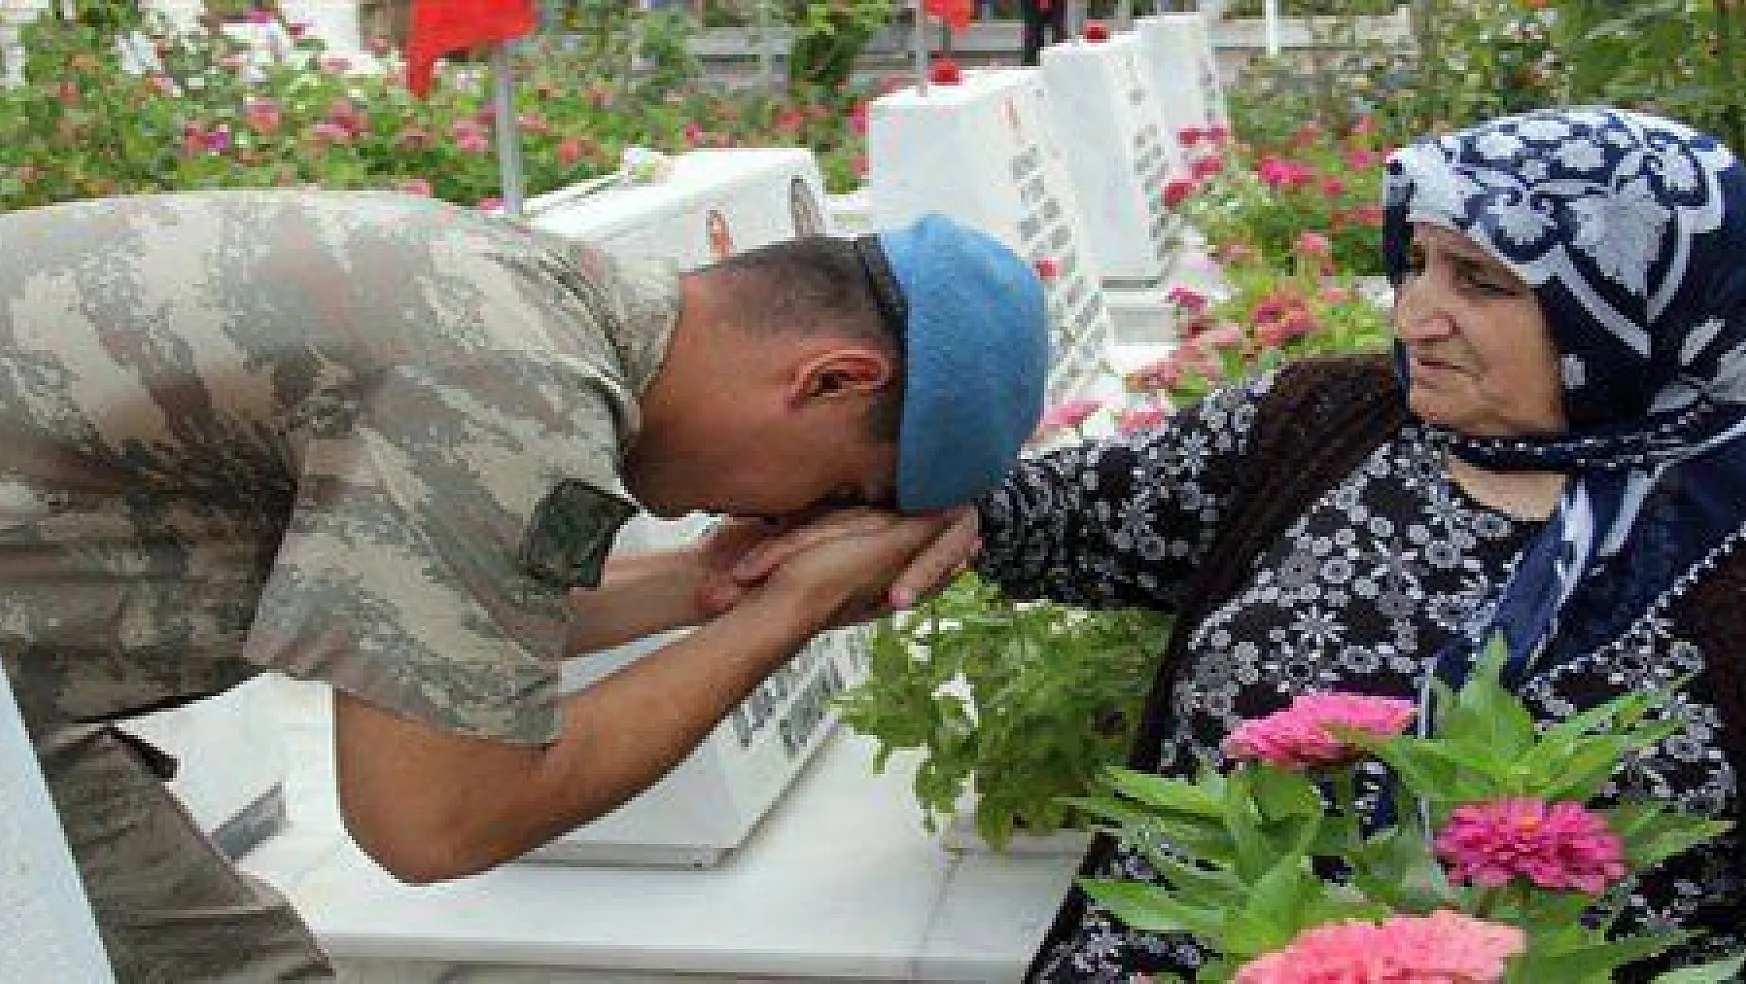 Askerler dua edip şehit annelerinin elini öptü